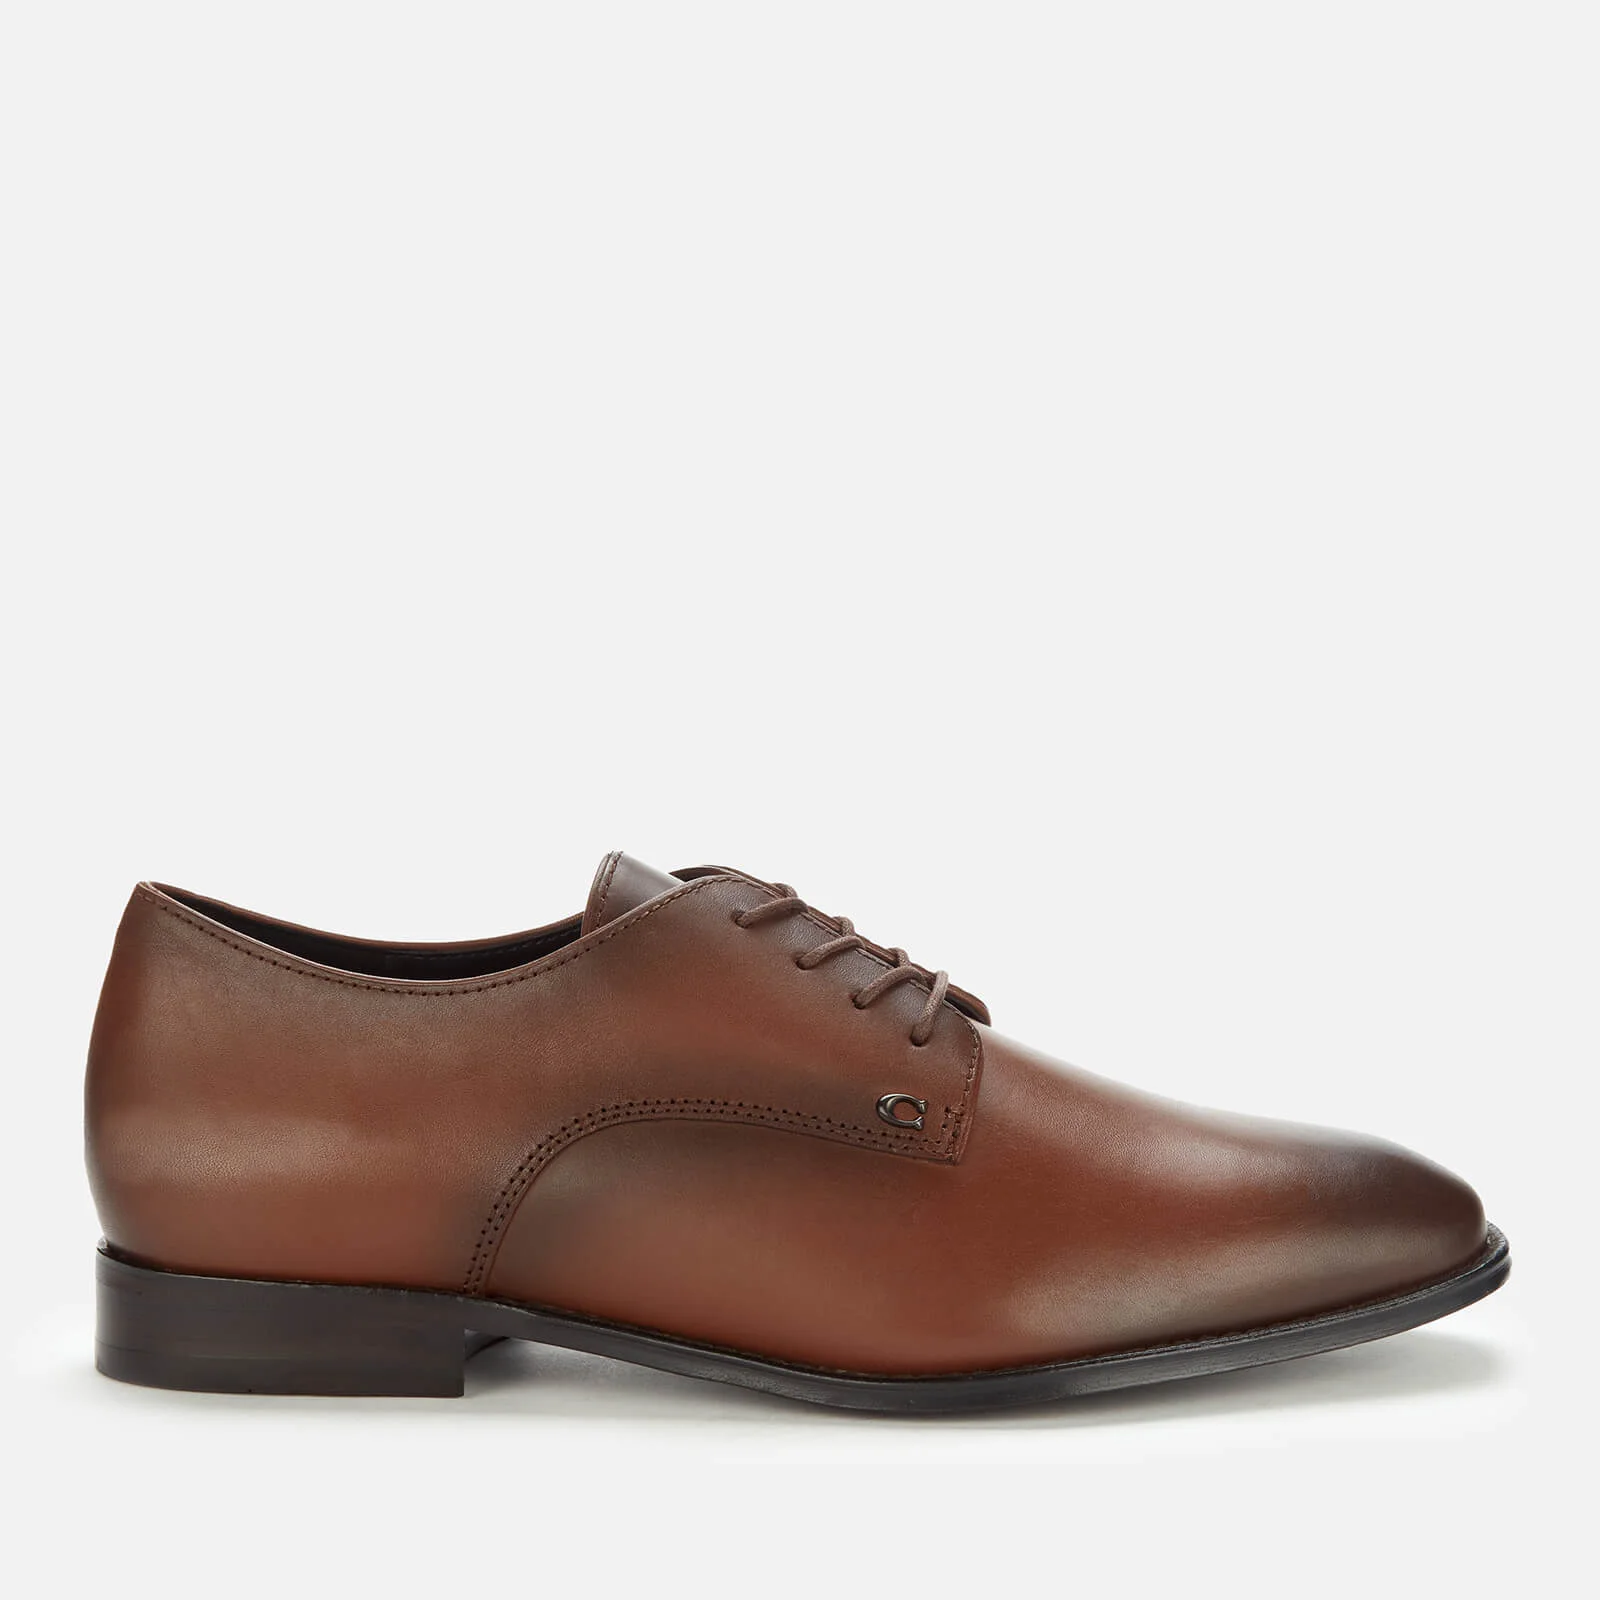 Coach Men's Metropolitan Leather Derby Shoes - Saddle Image 1